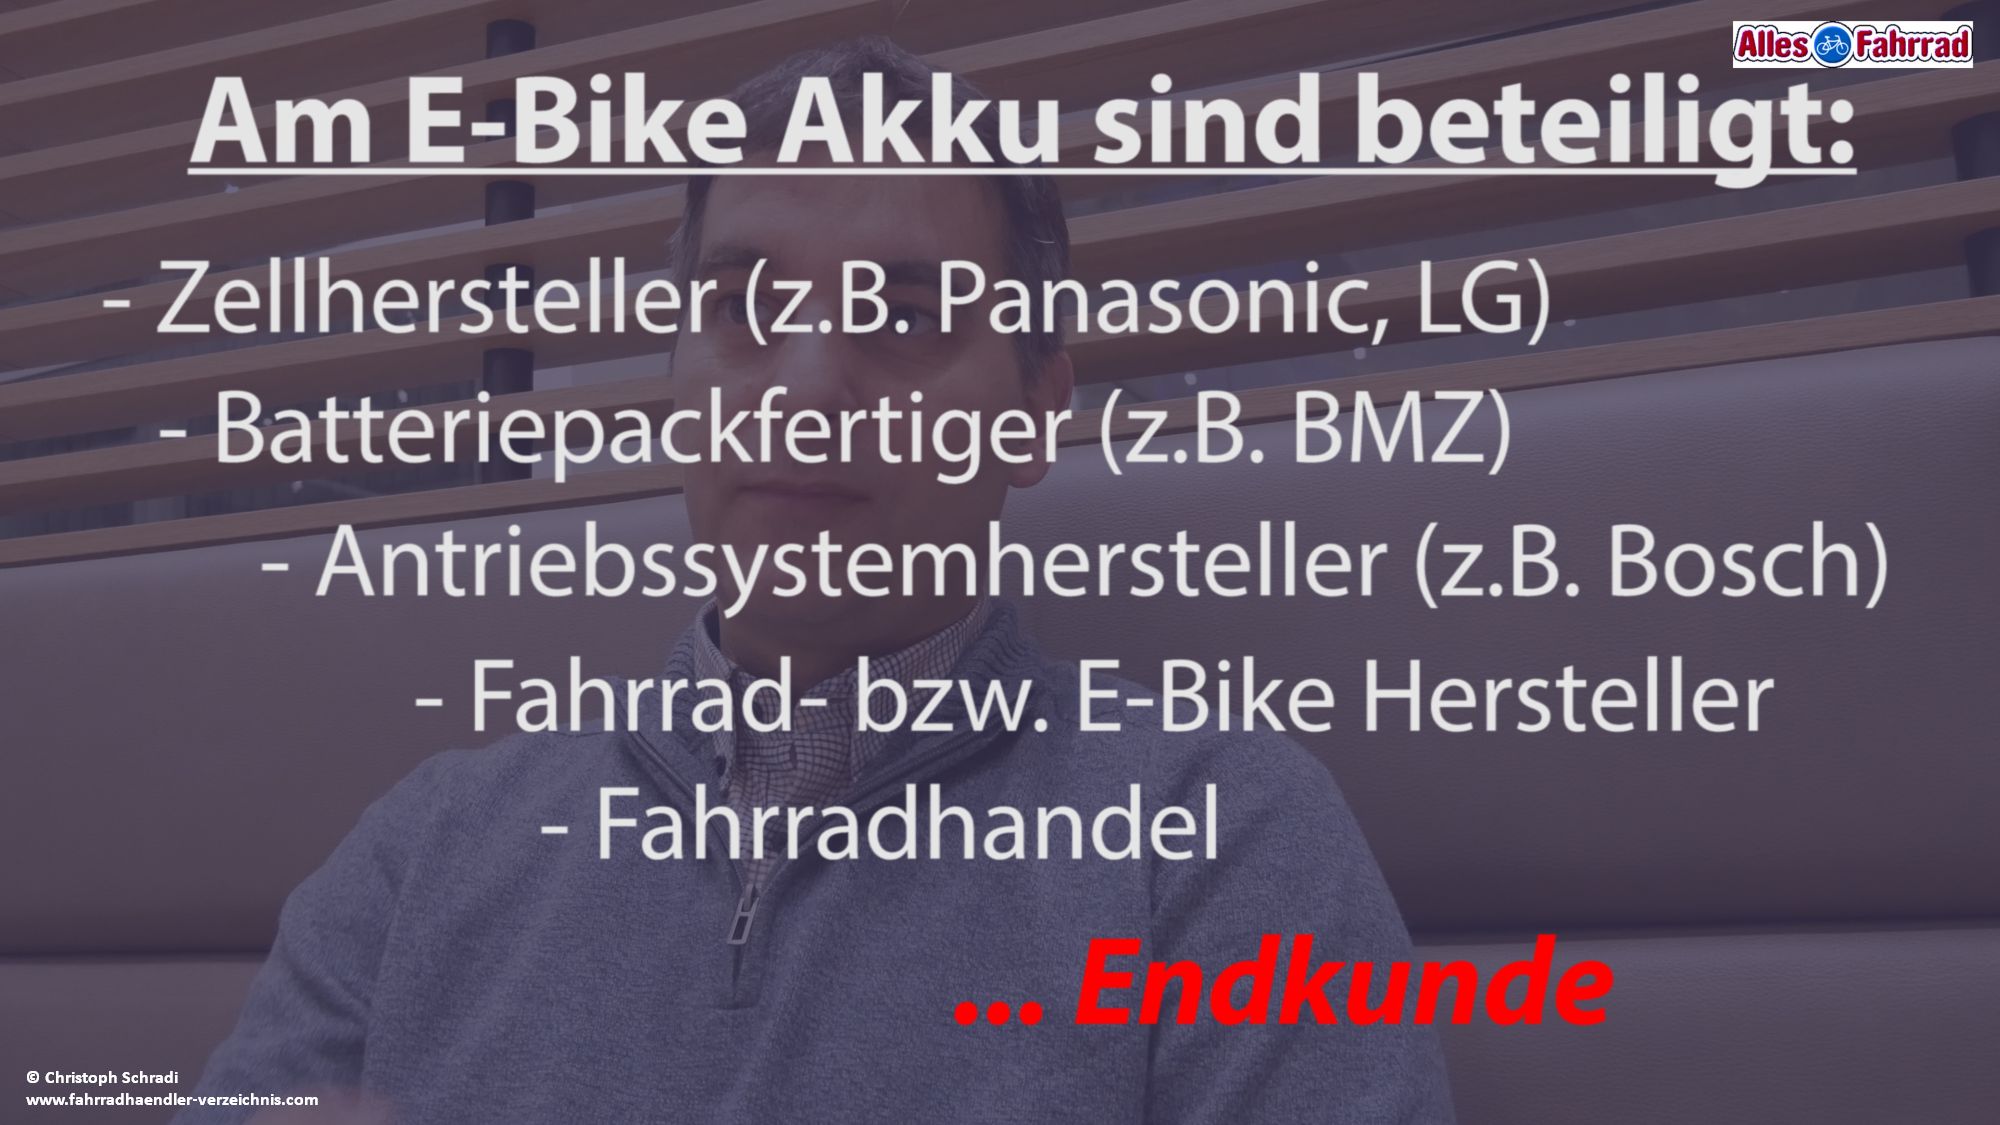 Interview: E-Bike Akkus zu teuer? – Kosten - Standardisierung – Ladeinfrastruktur